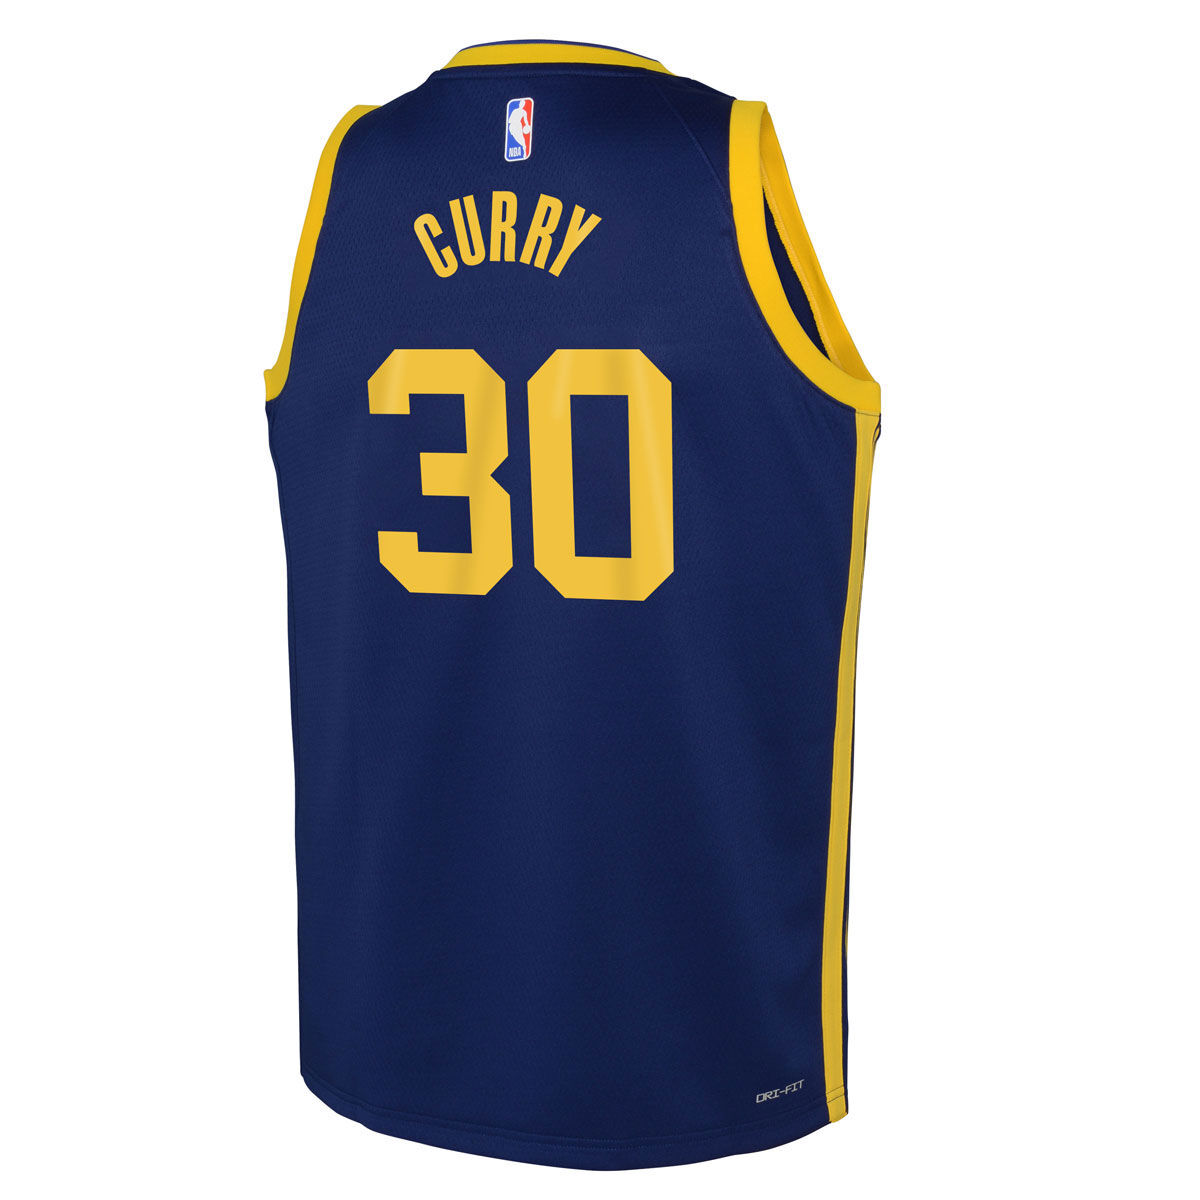 Reebok Gary Payton Los Angeles Lakers Replica Jersey Vtg NBA Basketball  Size XL